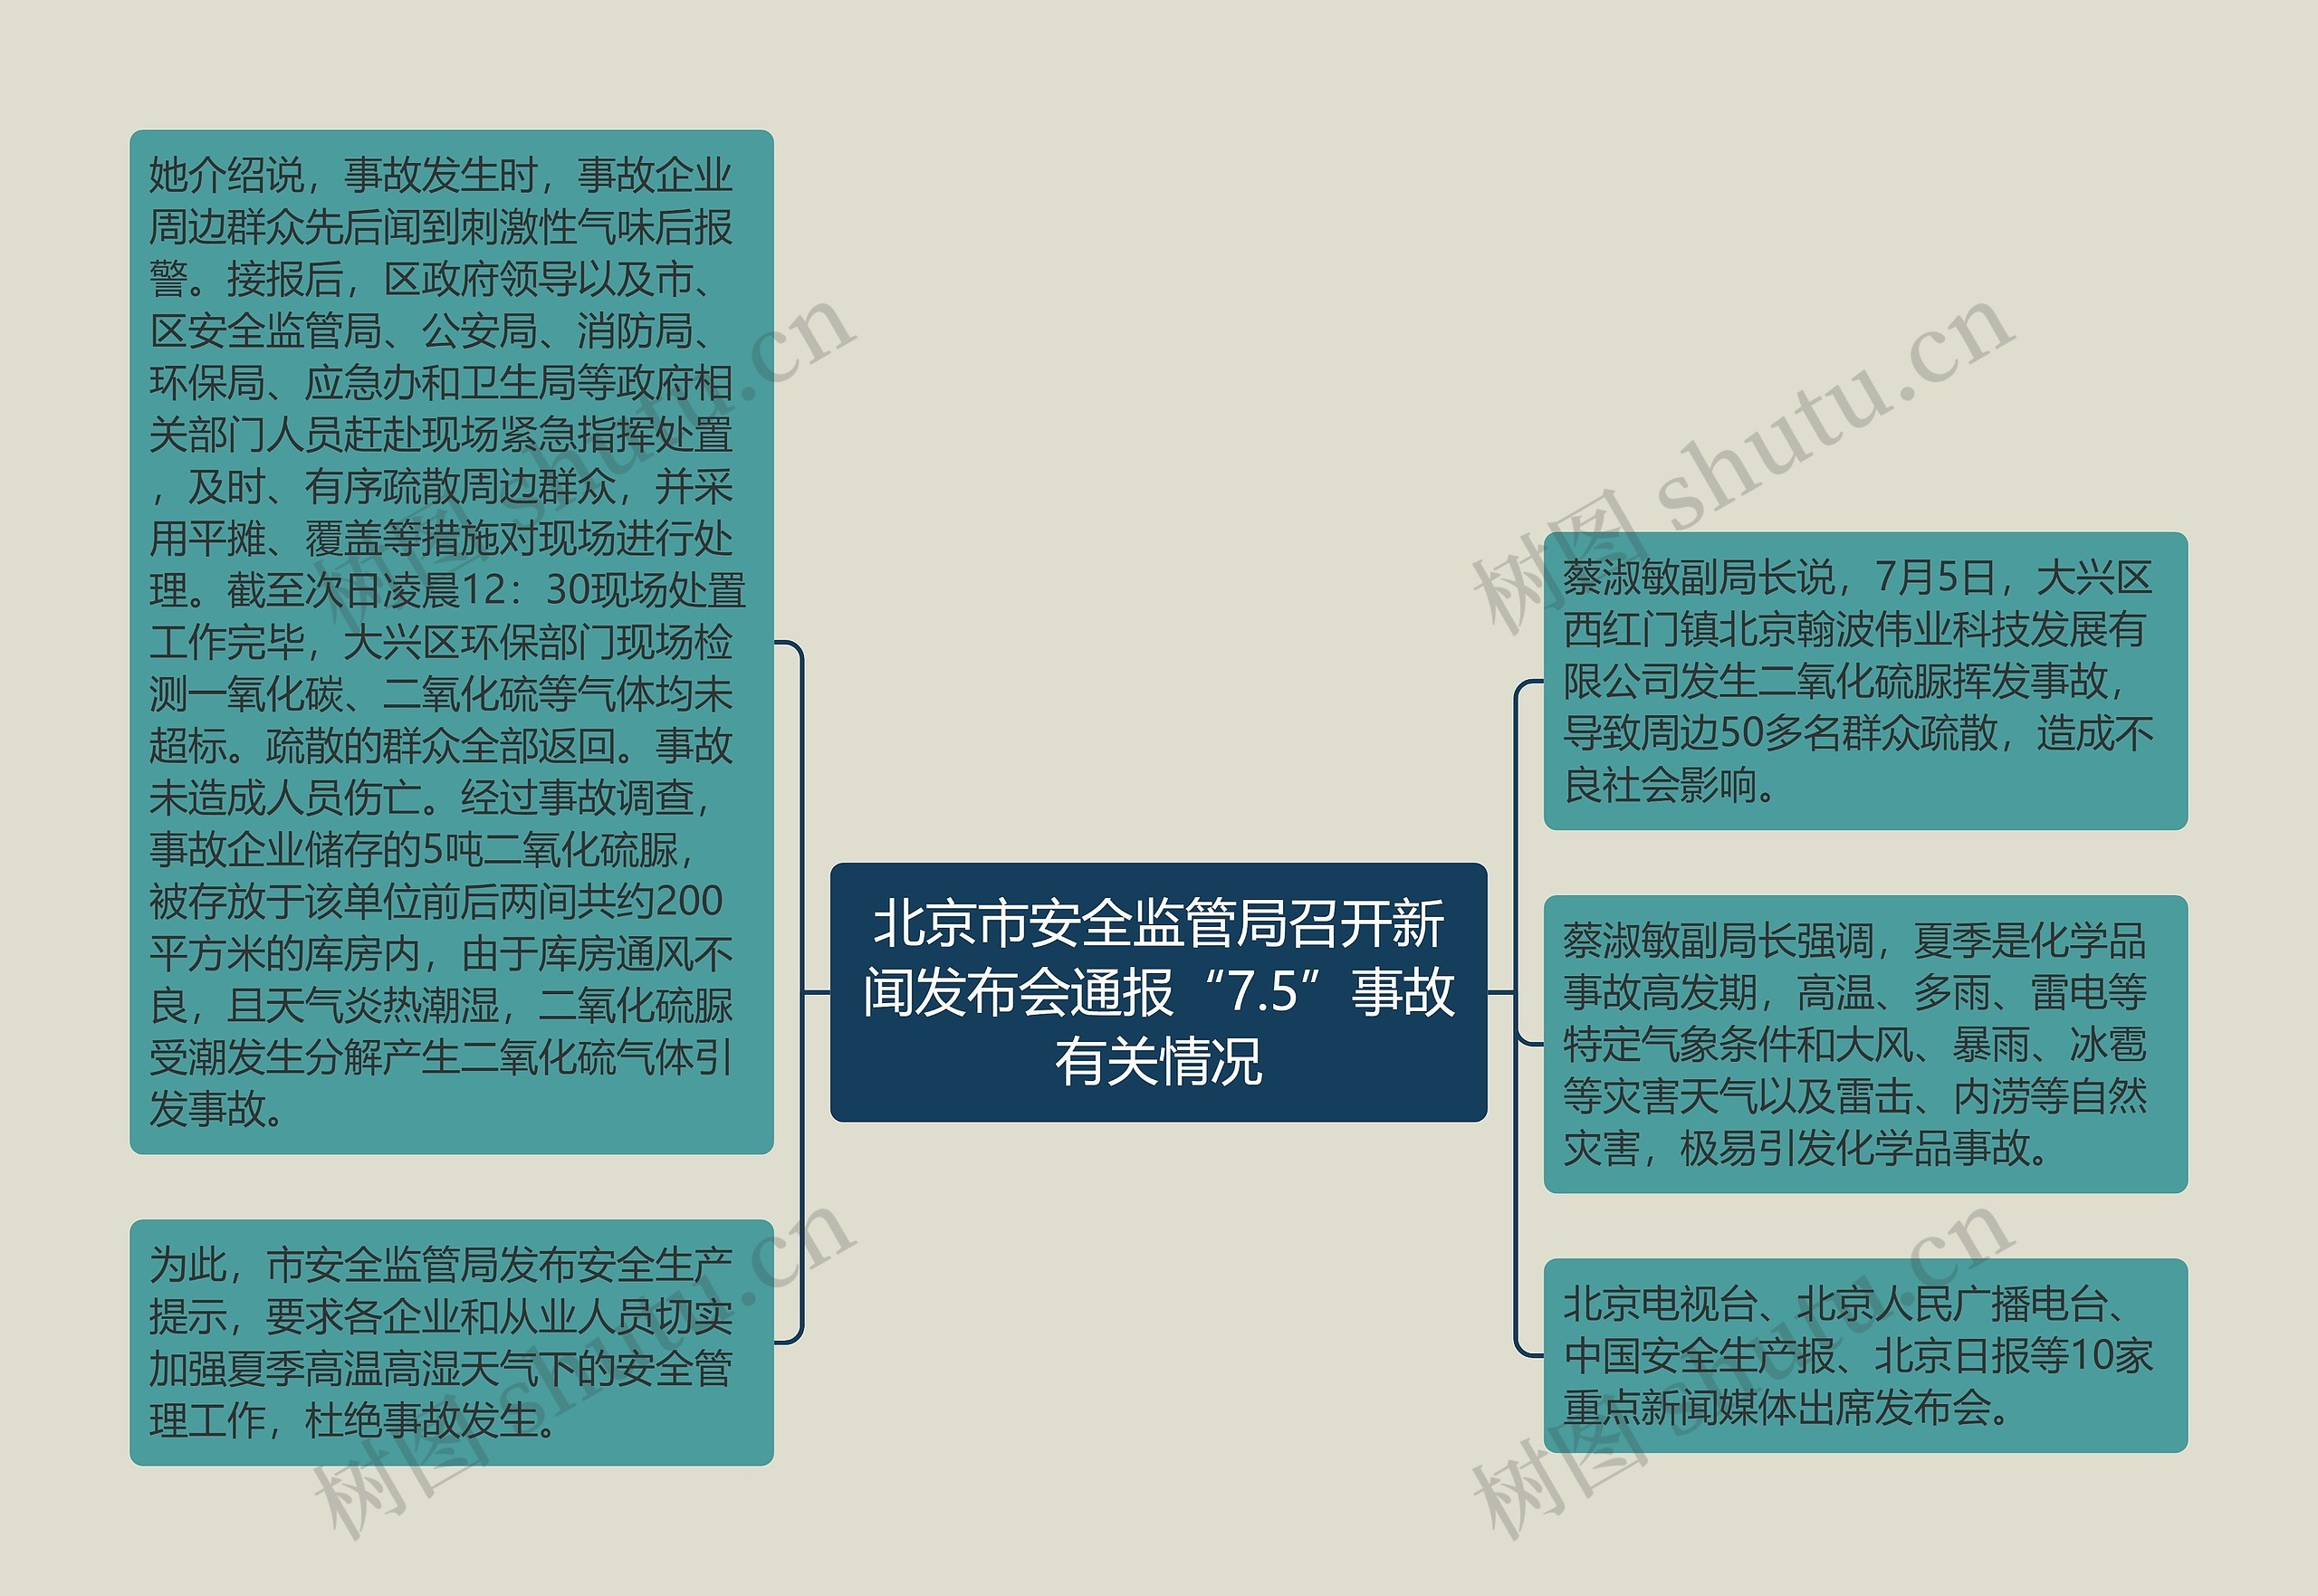 北京市安全监管局召开新闻发布会通报“7.5”事故有关情况